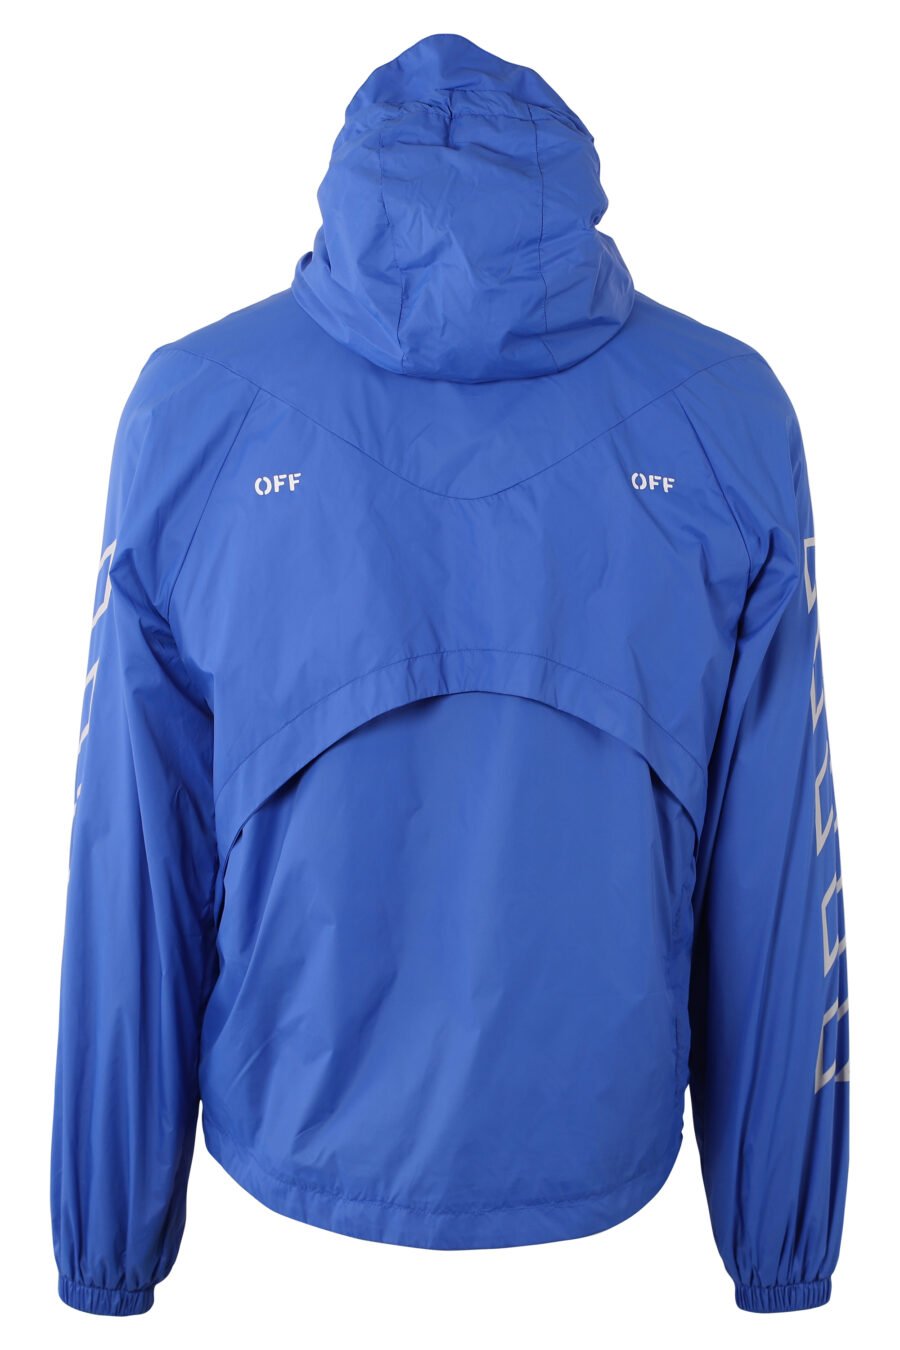 Blue jacket with white logo "Diagonals" - IMG 1562